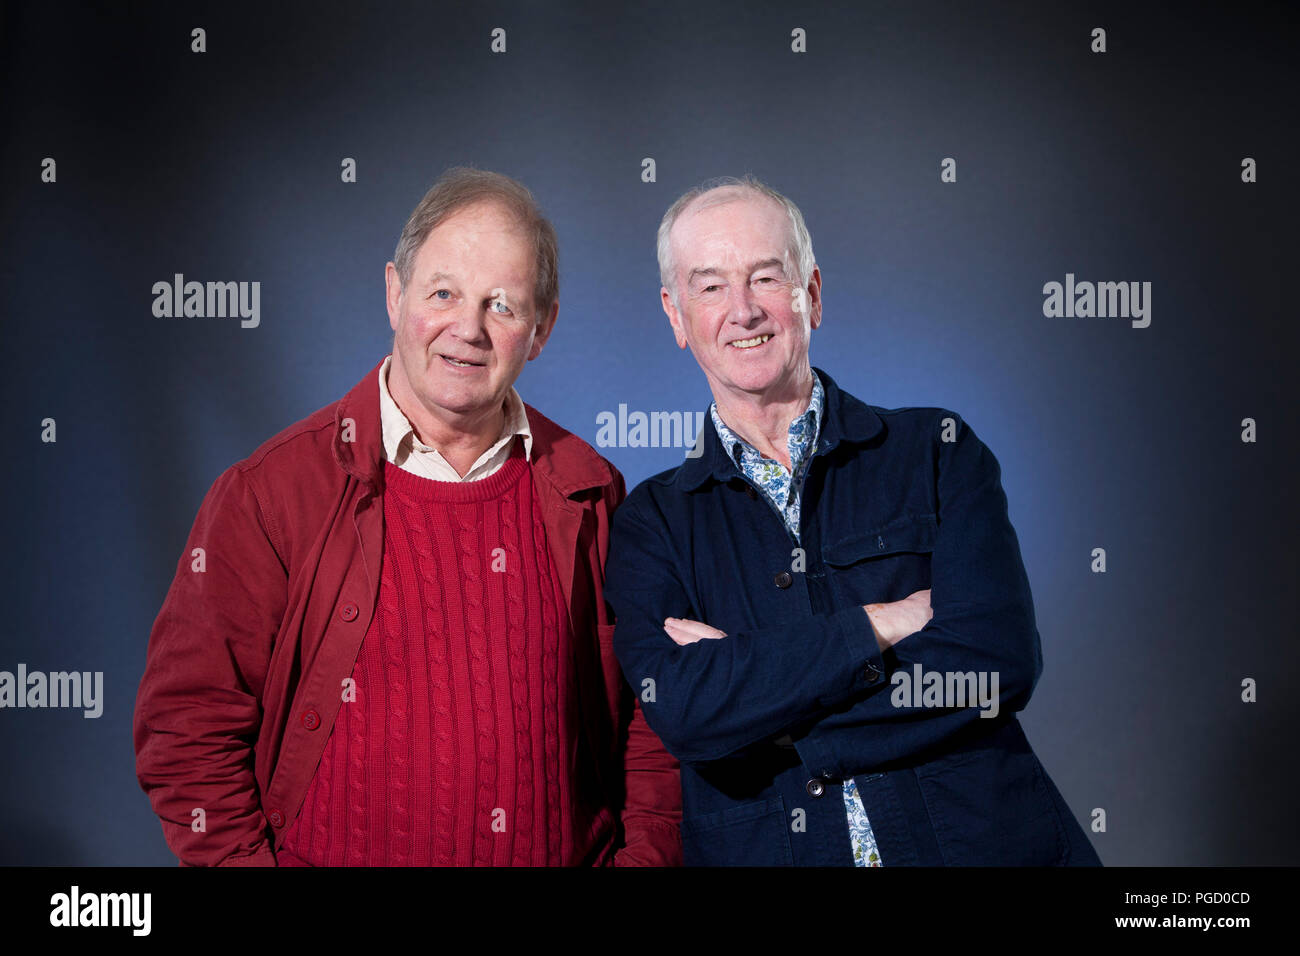 Edinburgh, Royaume-Uni. 25 août, 2018. Michael Morpurgo (à gauche) & David Almond, deux grands de la littérature pour enfants, à l'Edinburgh International Book Festival. Edimbourg, Ecosse. Photo par Gary Doak / Alamy Live News Banque D'Images